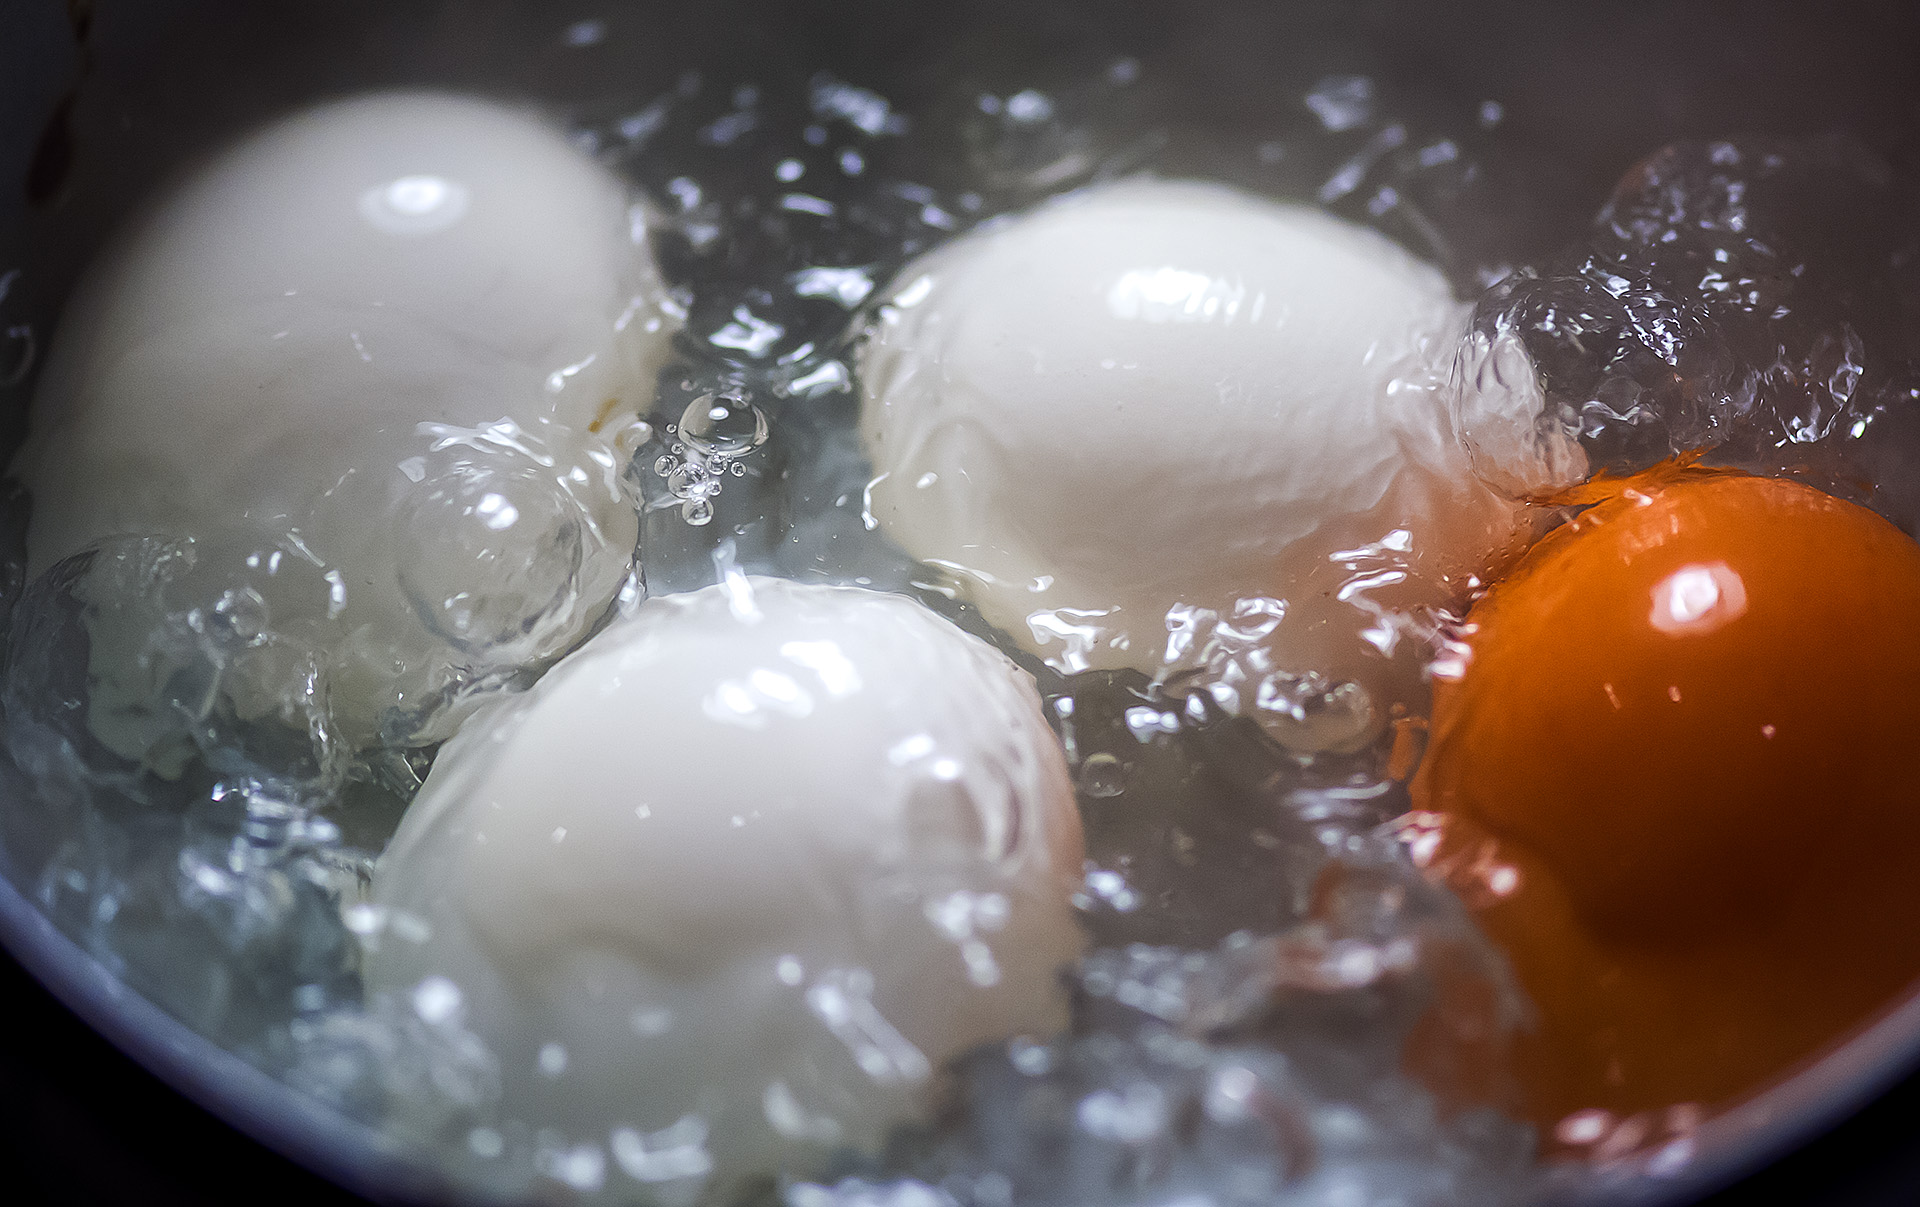 Сварить яйца без воды